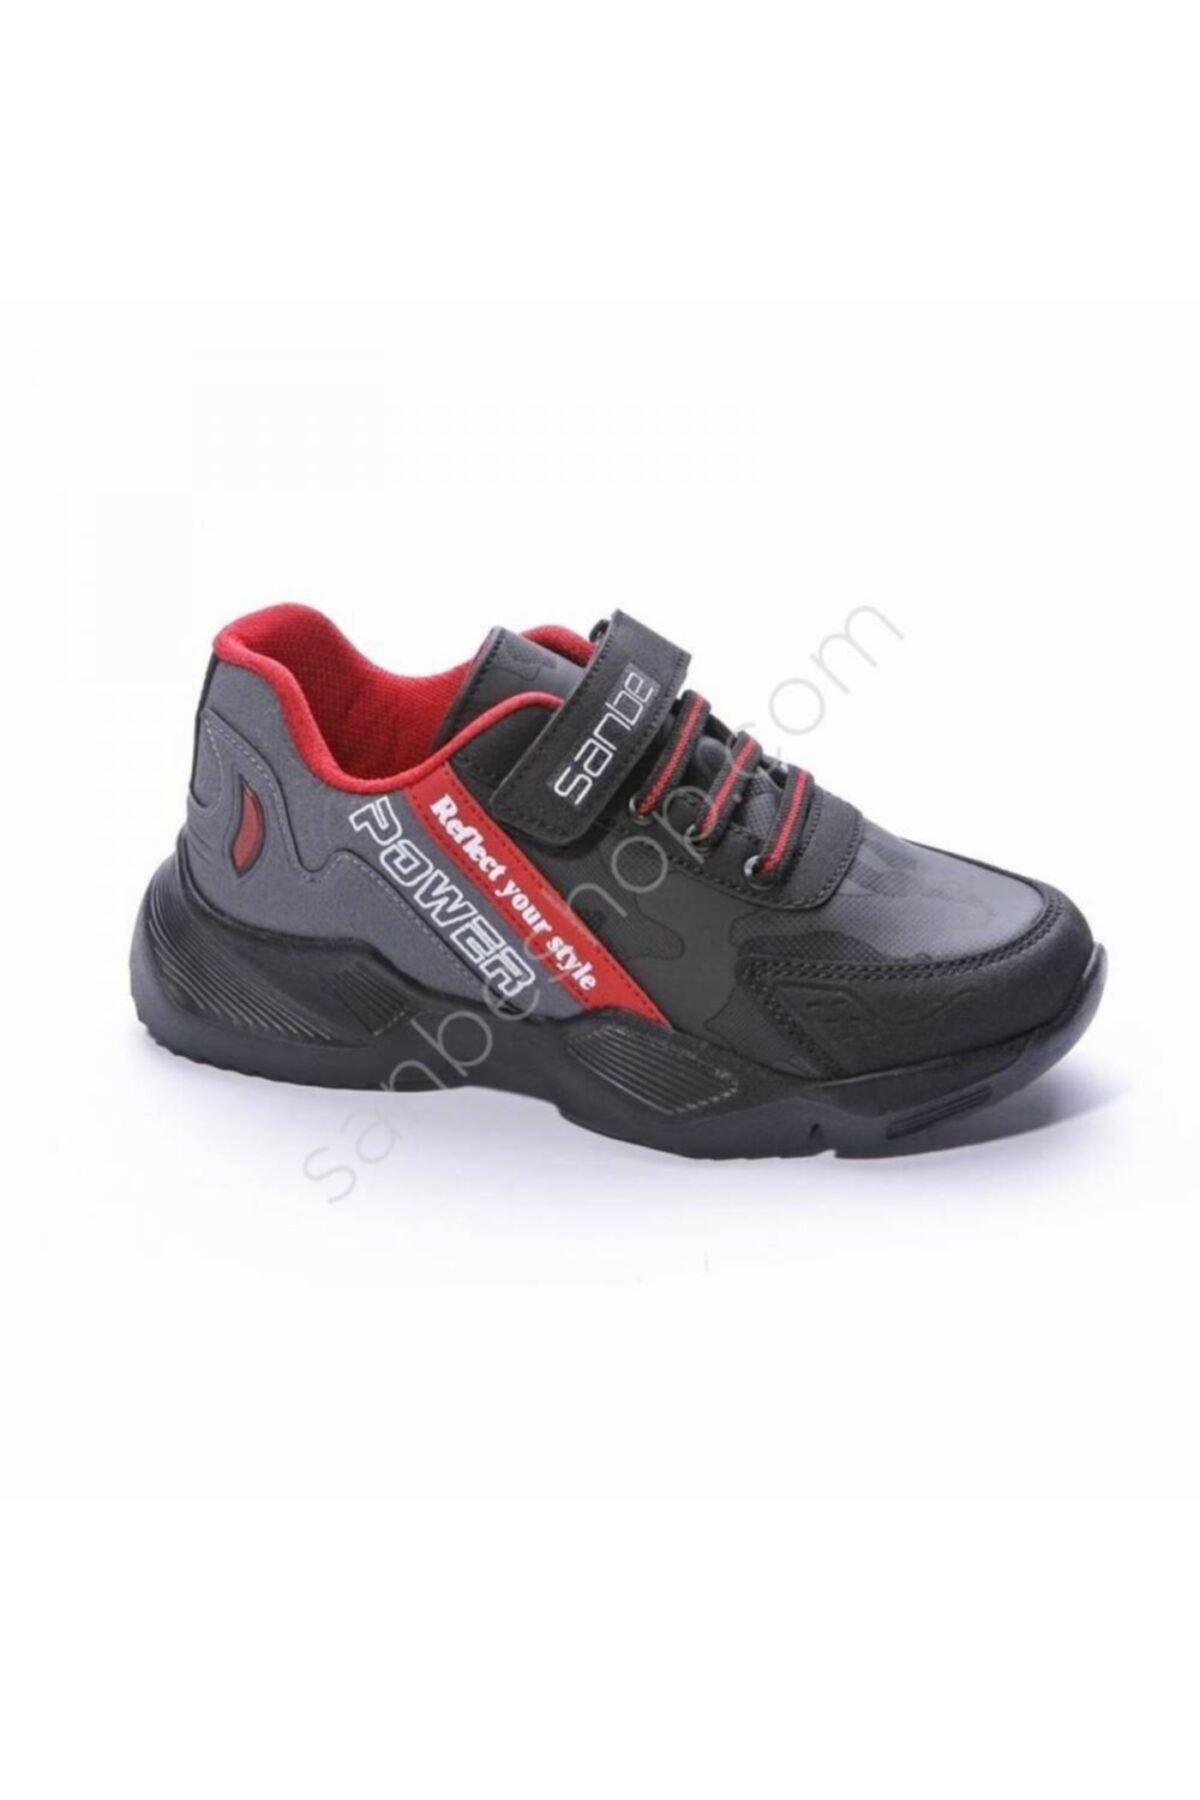 Sanbe 130 S 7702 (2021) 31-35 Unısex Çocuk Spor Ayakkabı Ücretsiz Kargo